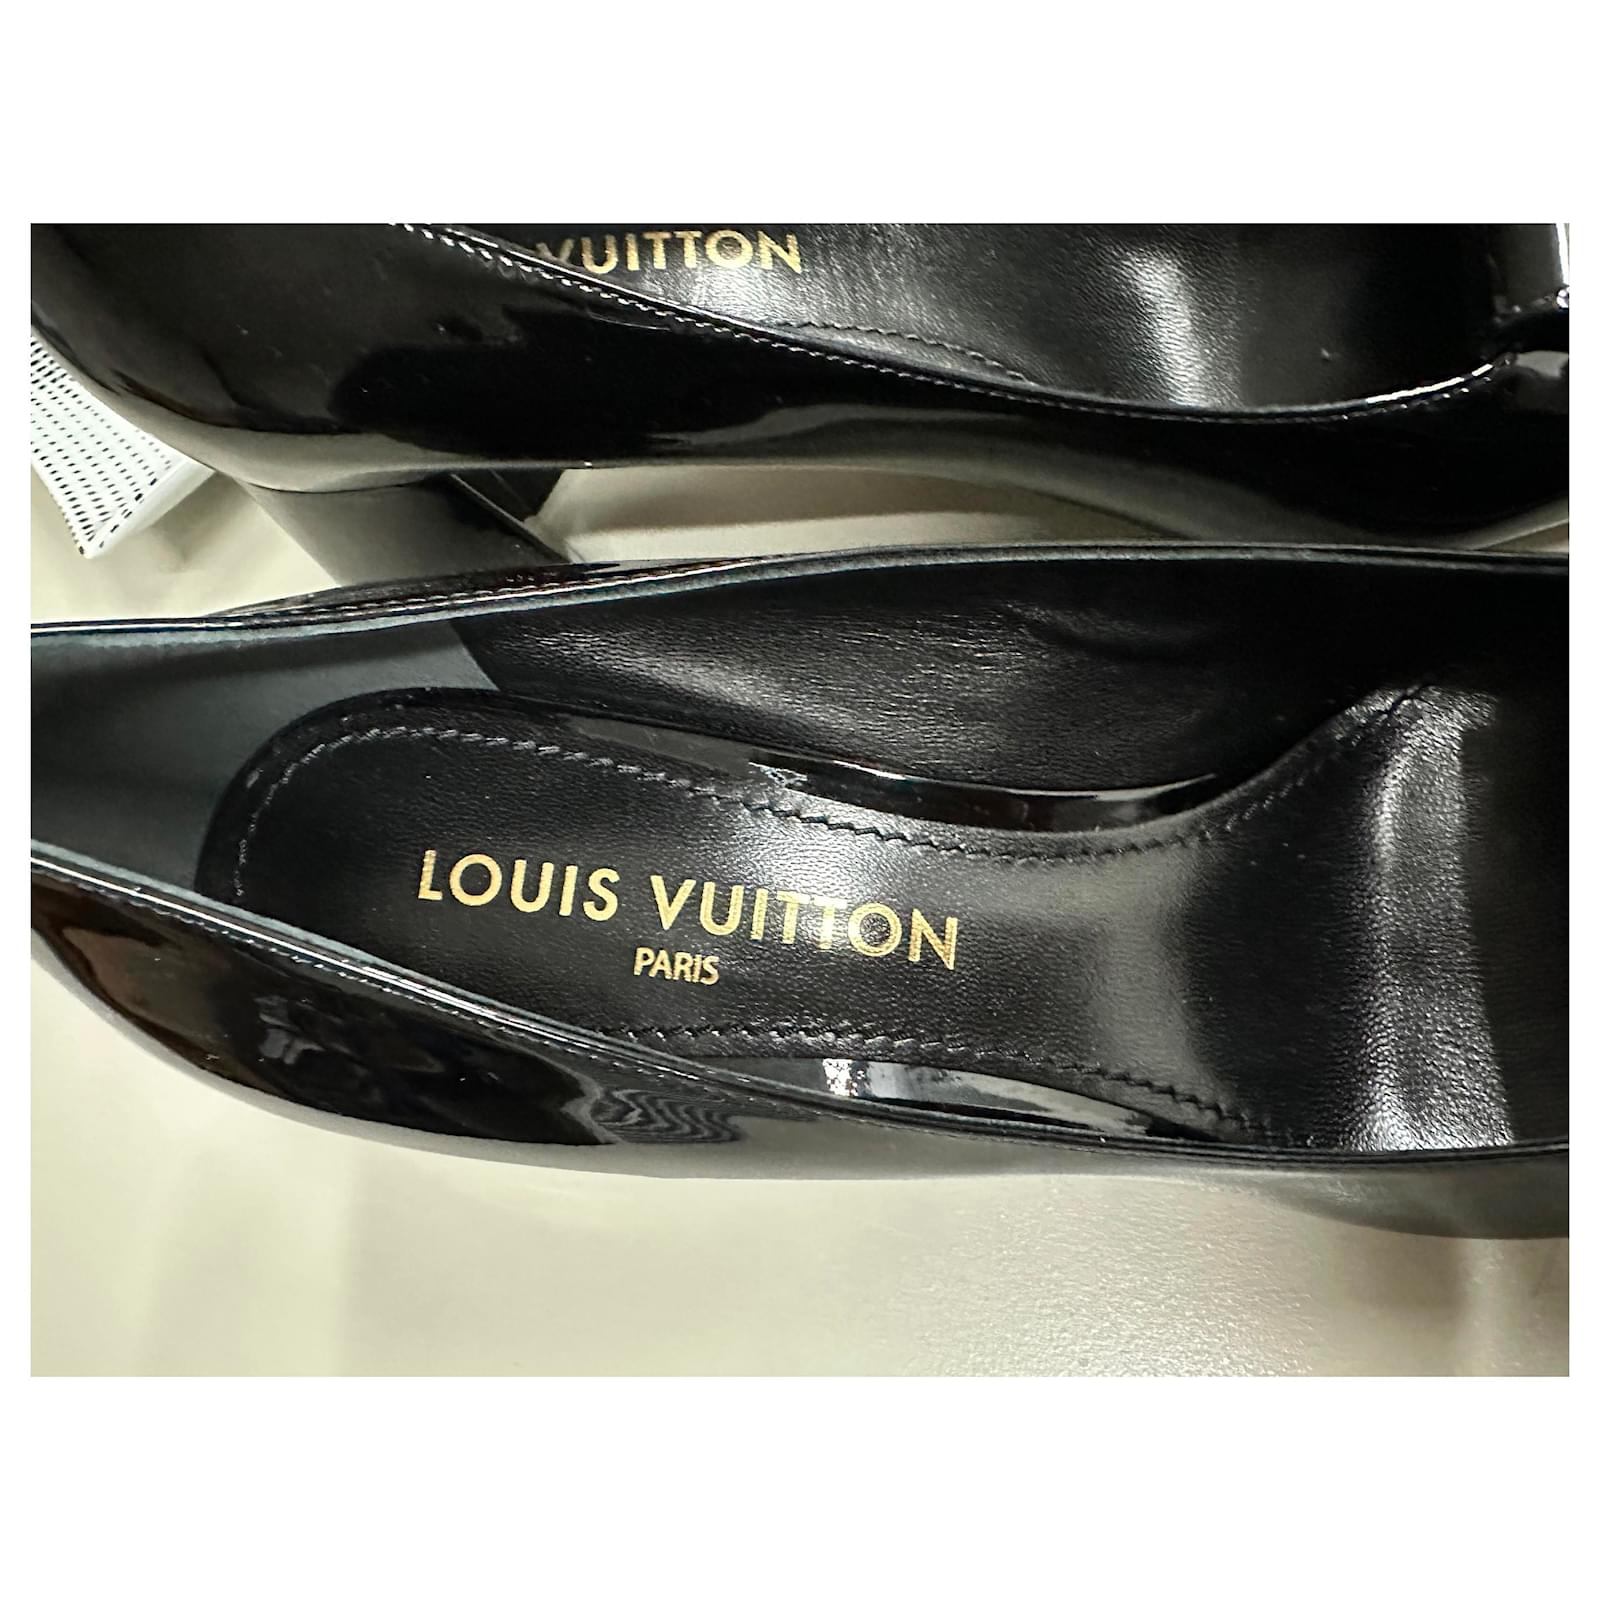 Louis Vuitton Patent Leather Pumps - Black Pumps, Shoes